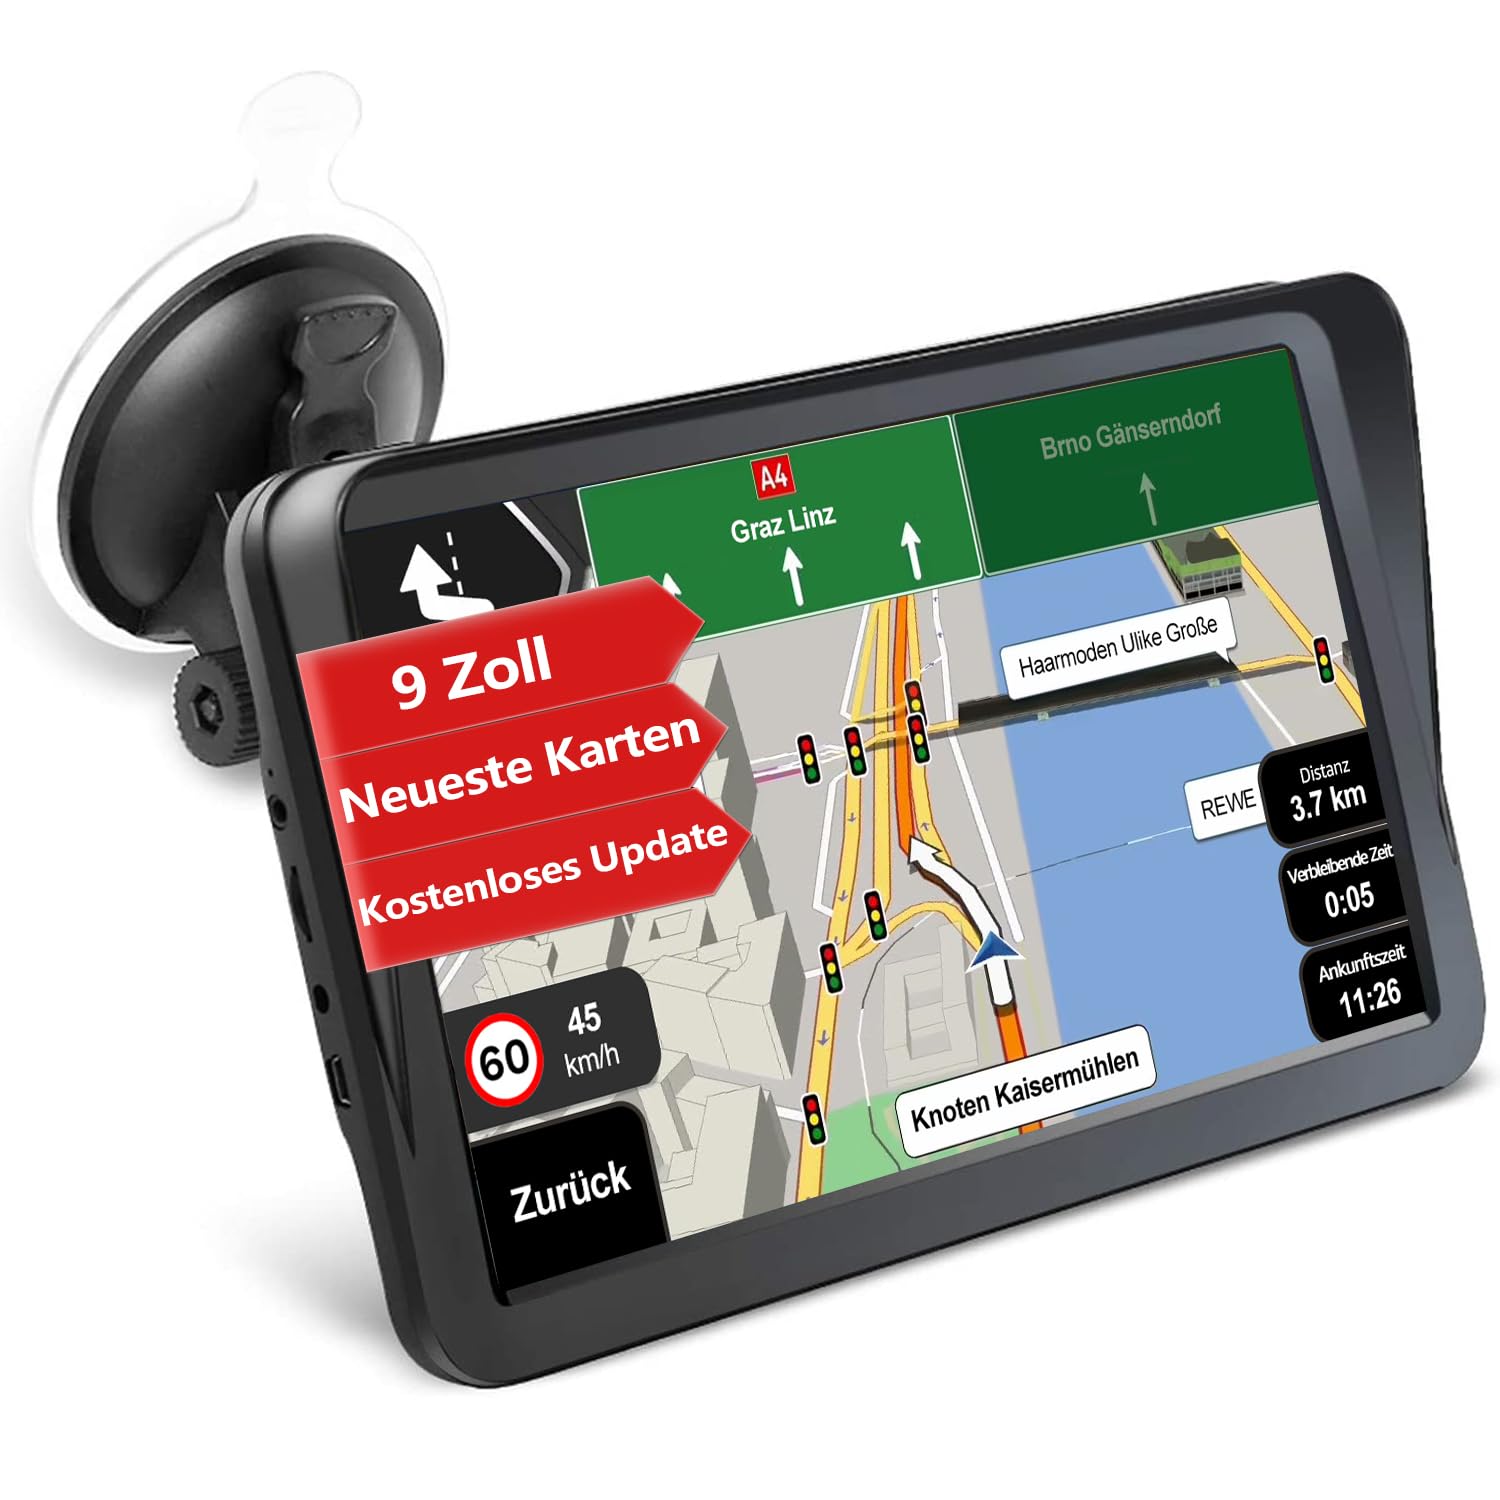 GPS Navi Navigation für Auto LKW PKW Aonerex 9 Zoll 16GB Navigationsgerät mit Sonnenschirm POI Sprachführung Fahrspurassistent UK & Europa Landkarte Lebenslang Kartenupdates